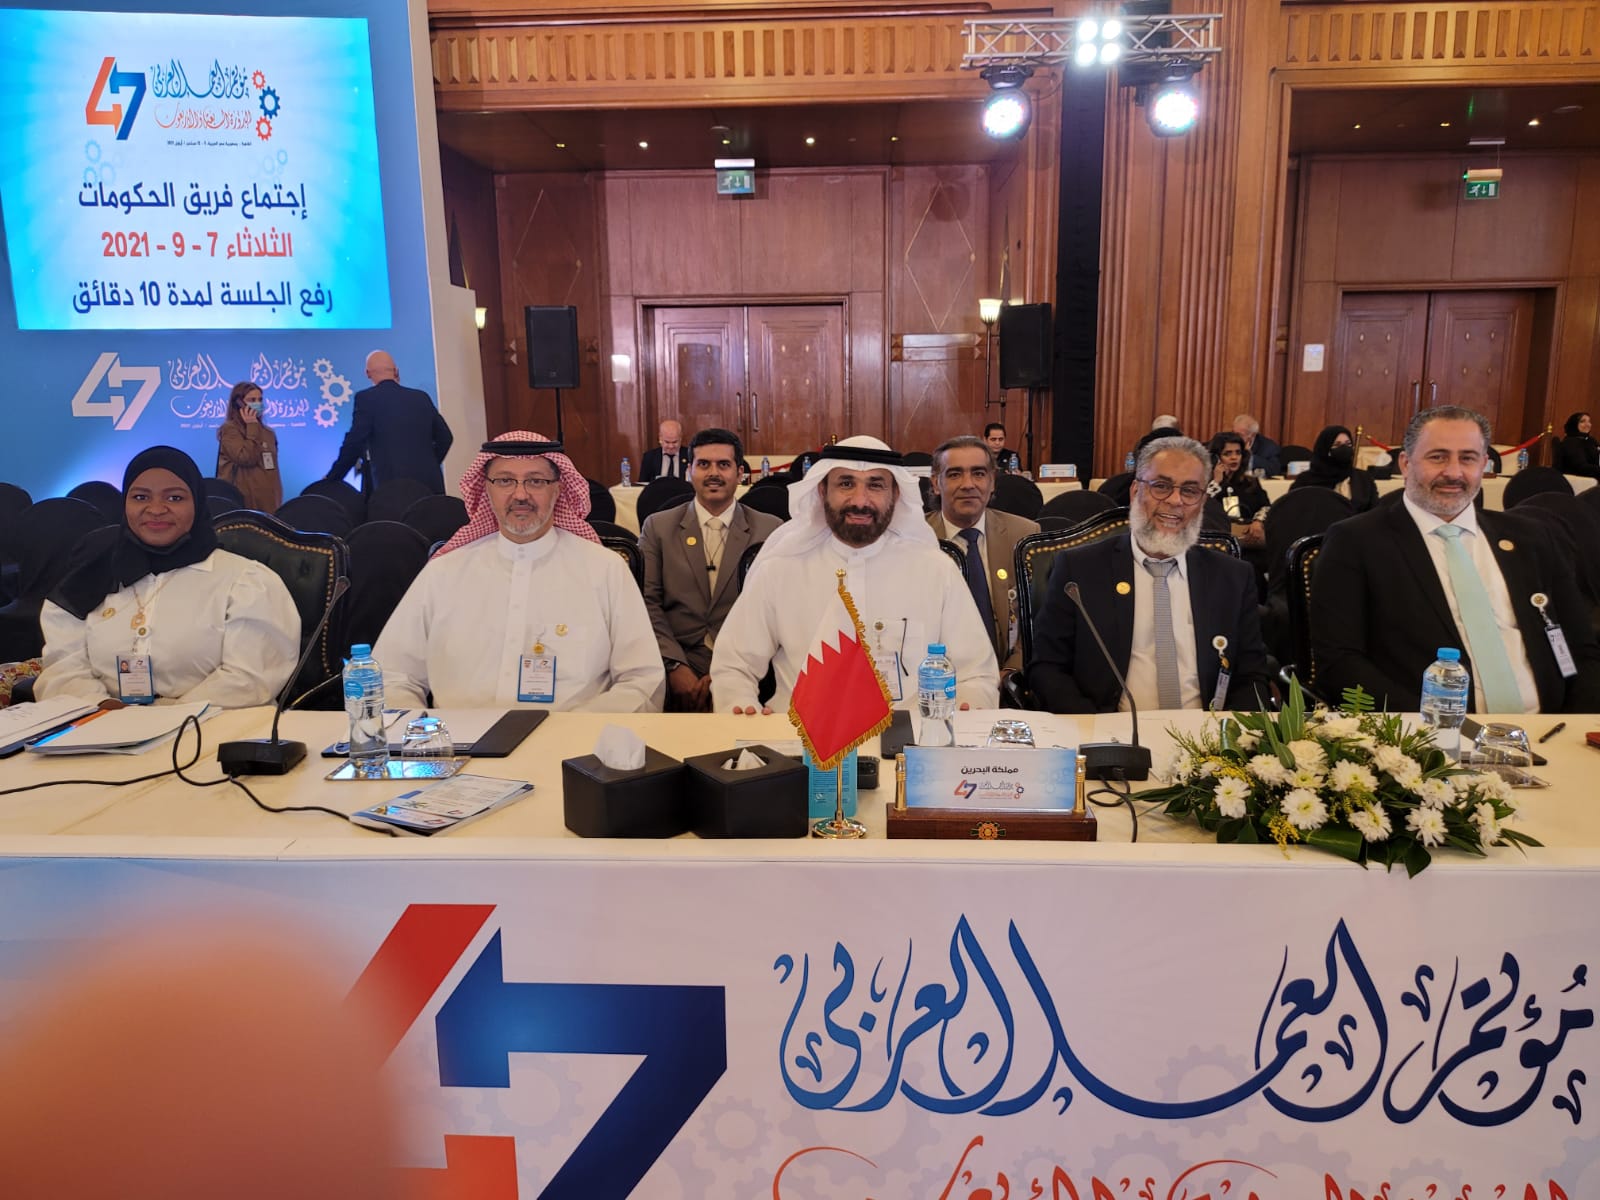 الاتحاد الحر بالبحرين يفوز بعضوية مجلس إدارة منظمة العمل العربية 